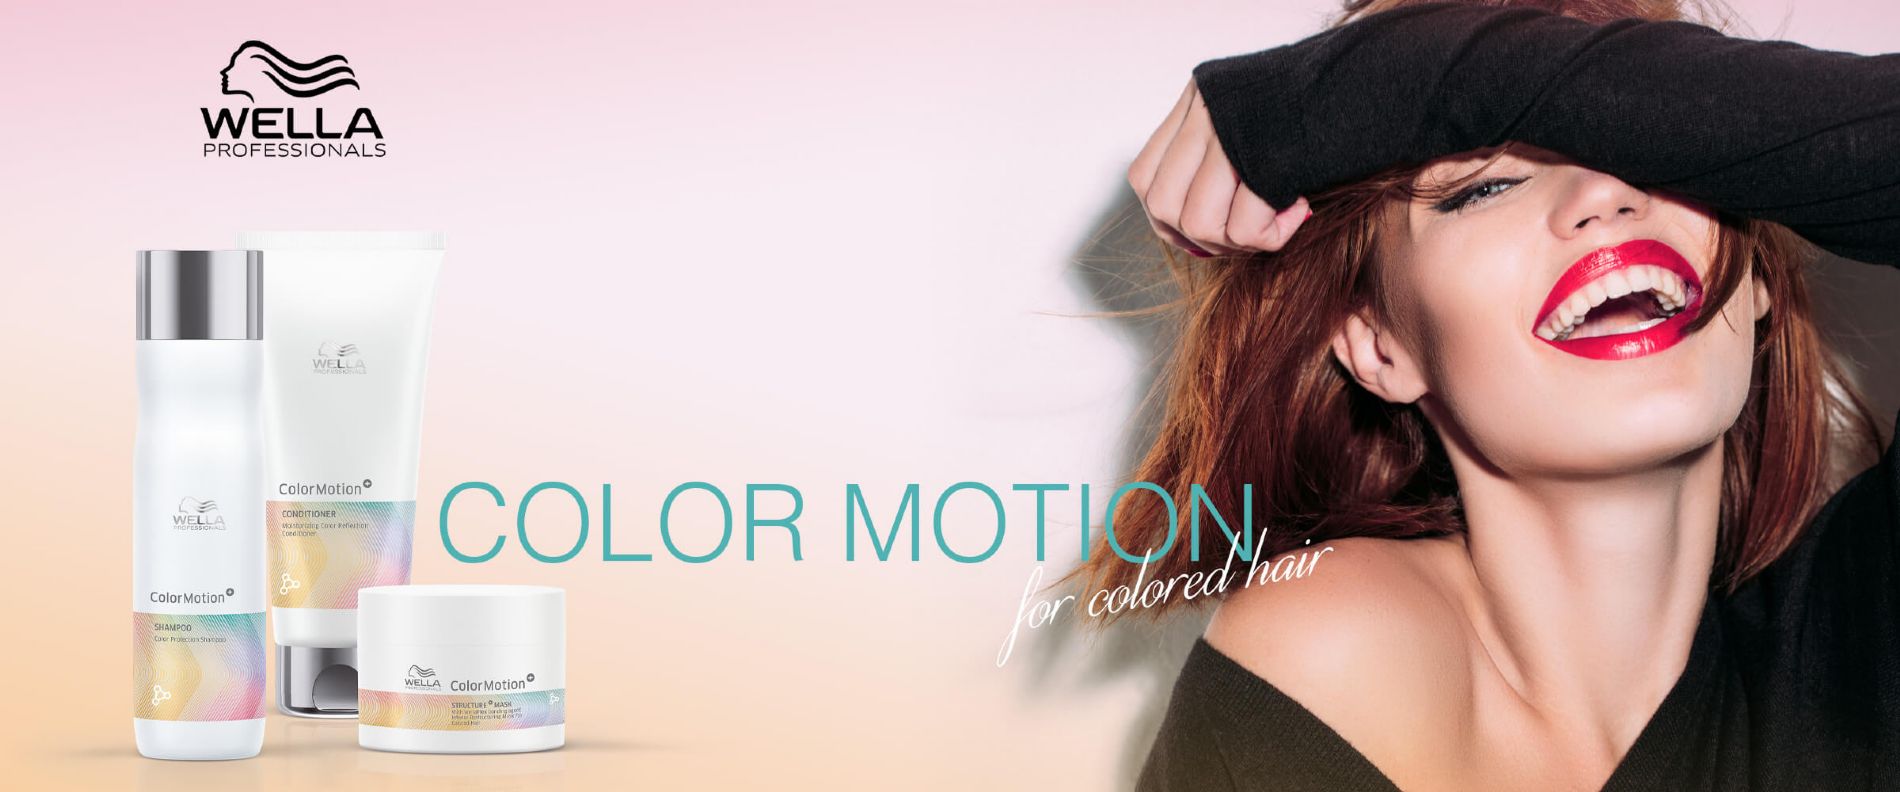 Color Motion